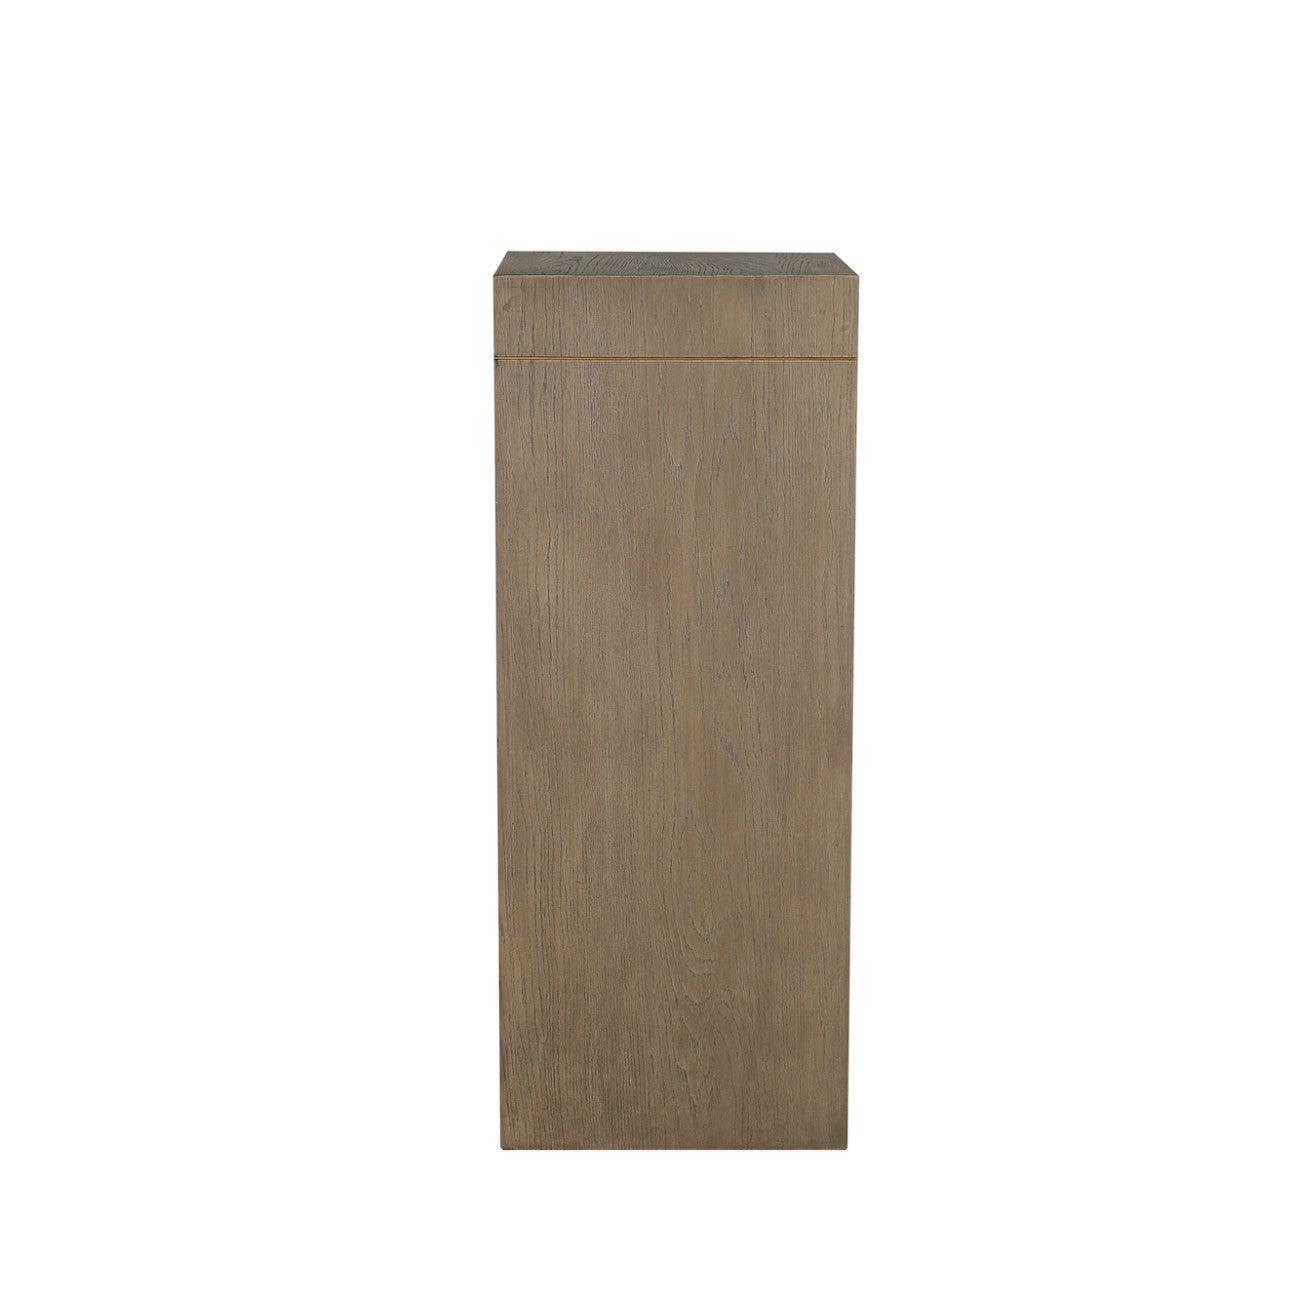 Renmin Reclaimed Oak Pedestal 40 by Eccotrading Design London - Maison Rêves UK